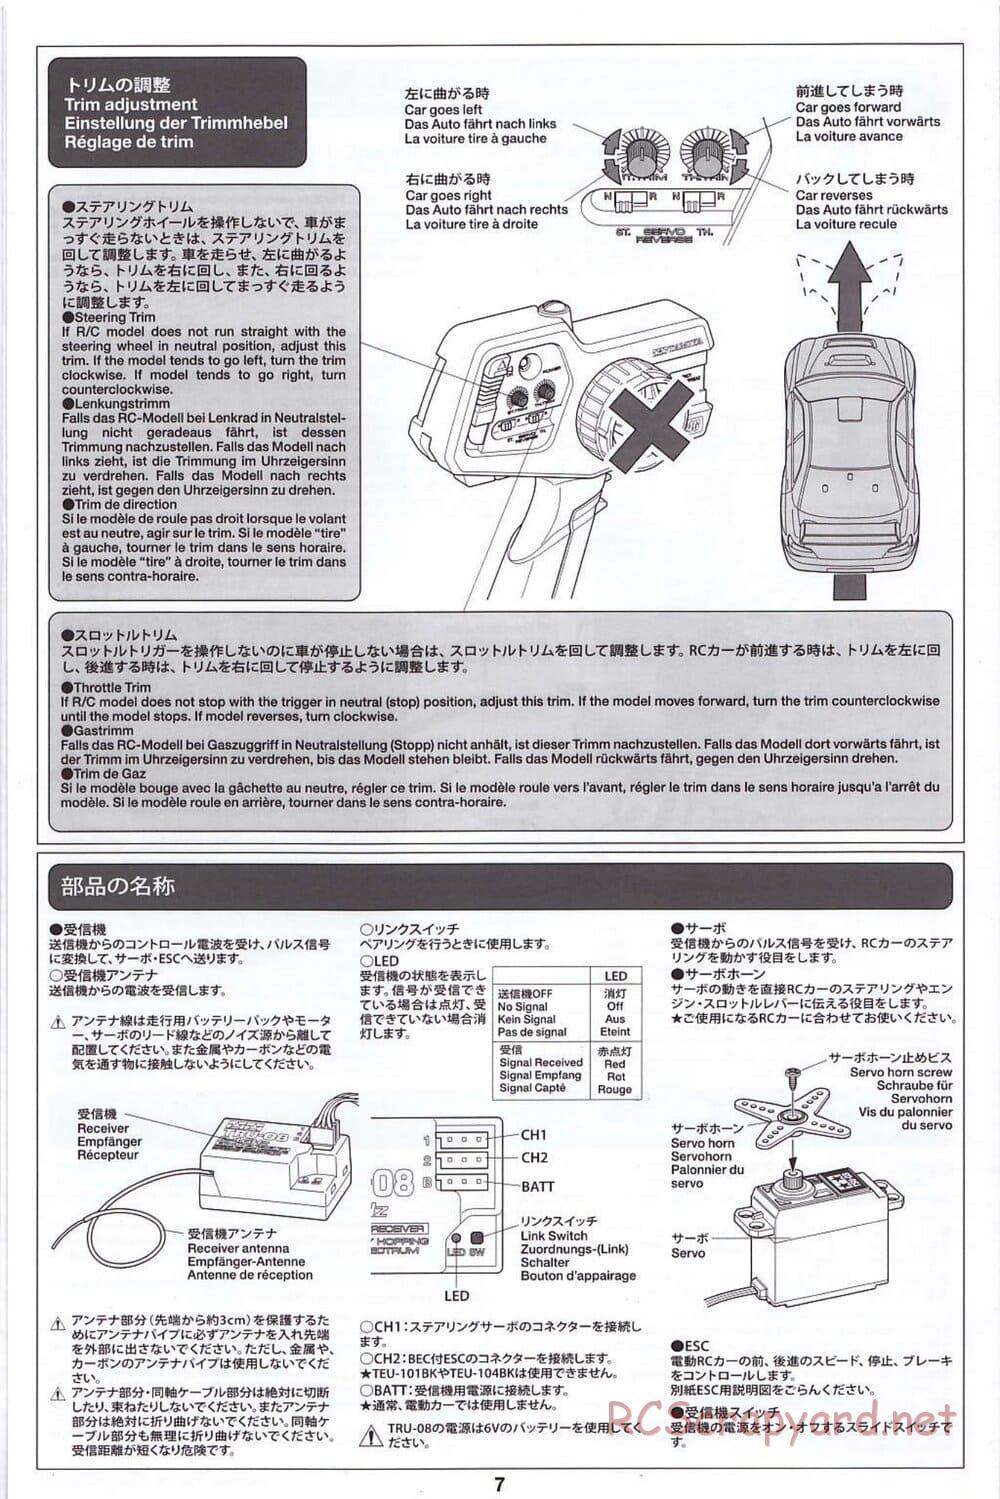 Tamiya - SA TT-02 - Radio - Manual - Page 7